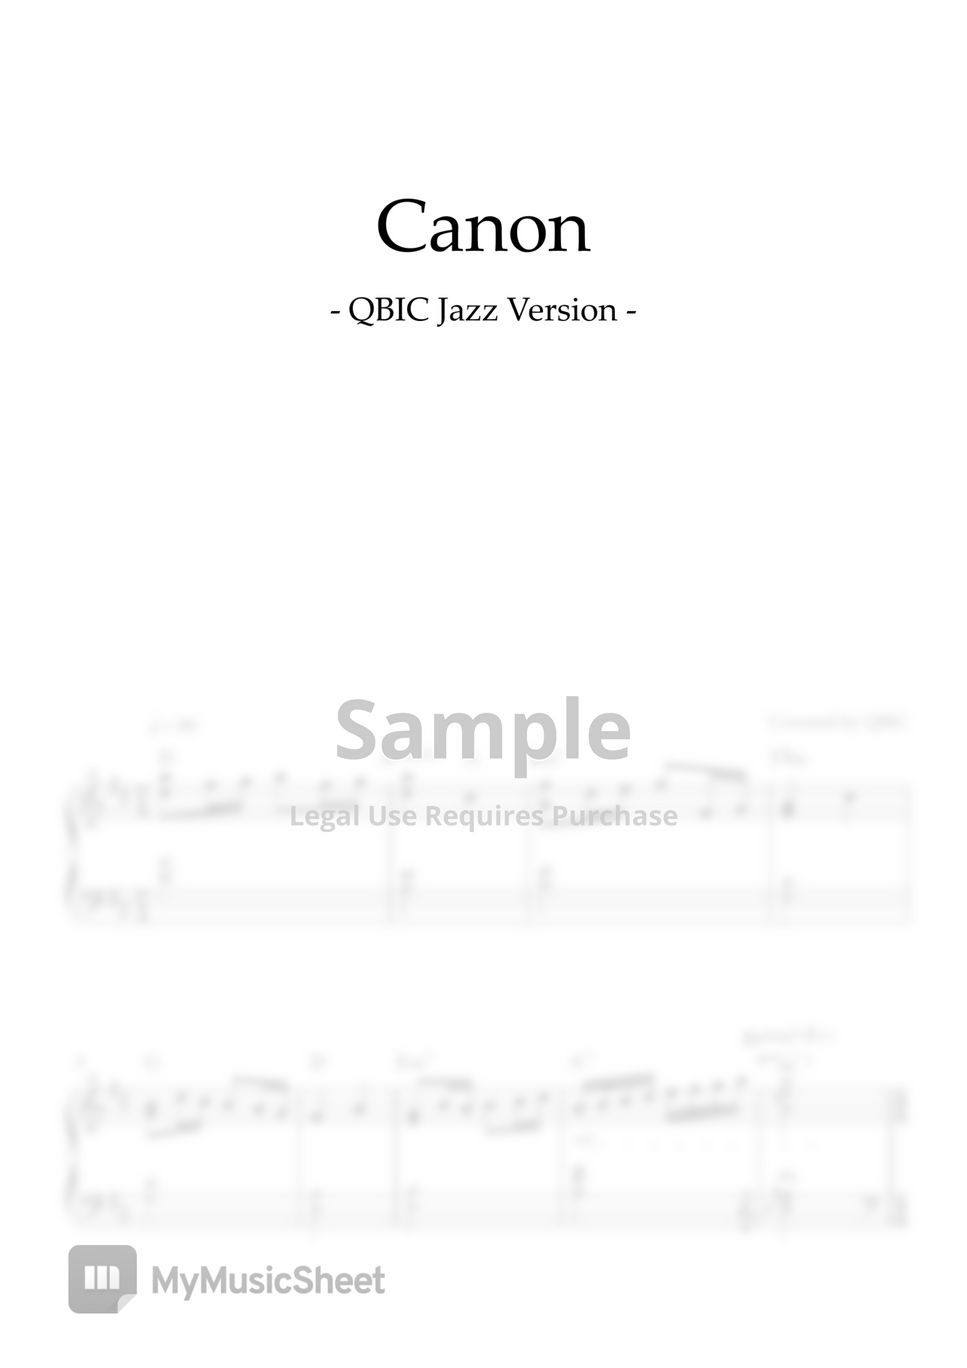 QBIC - Canon (Jazz Ver.) by QBIC